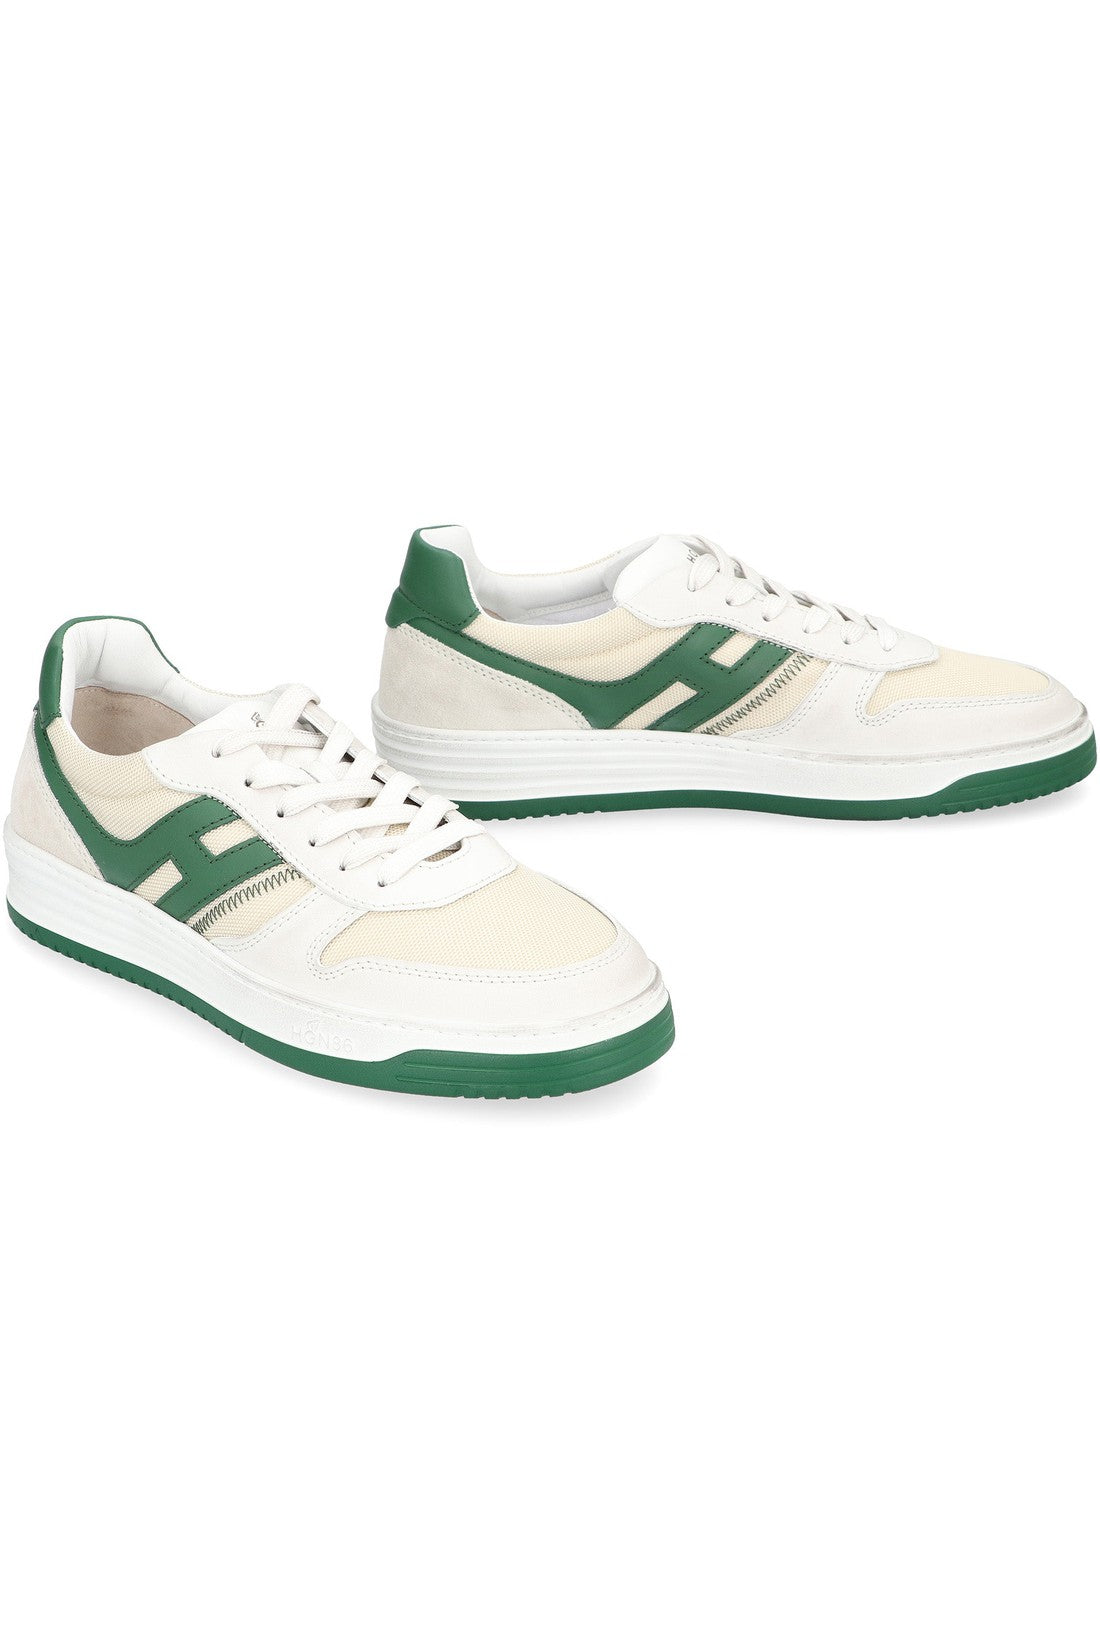 Hogan-OUTLET-SALE-Hogan H630 Low-top sneakers-ARCHIVIST